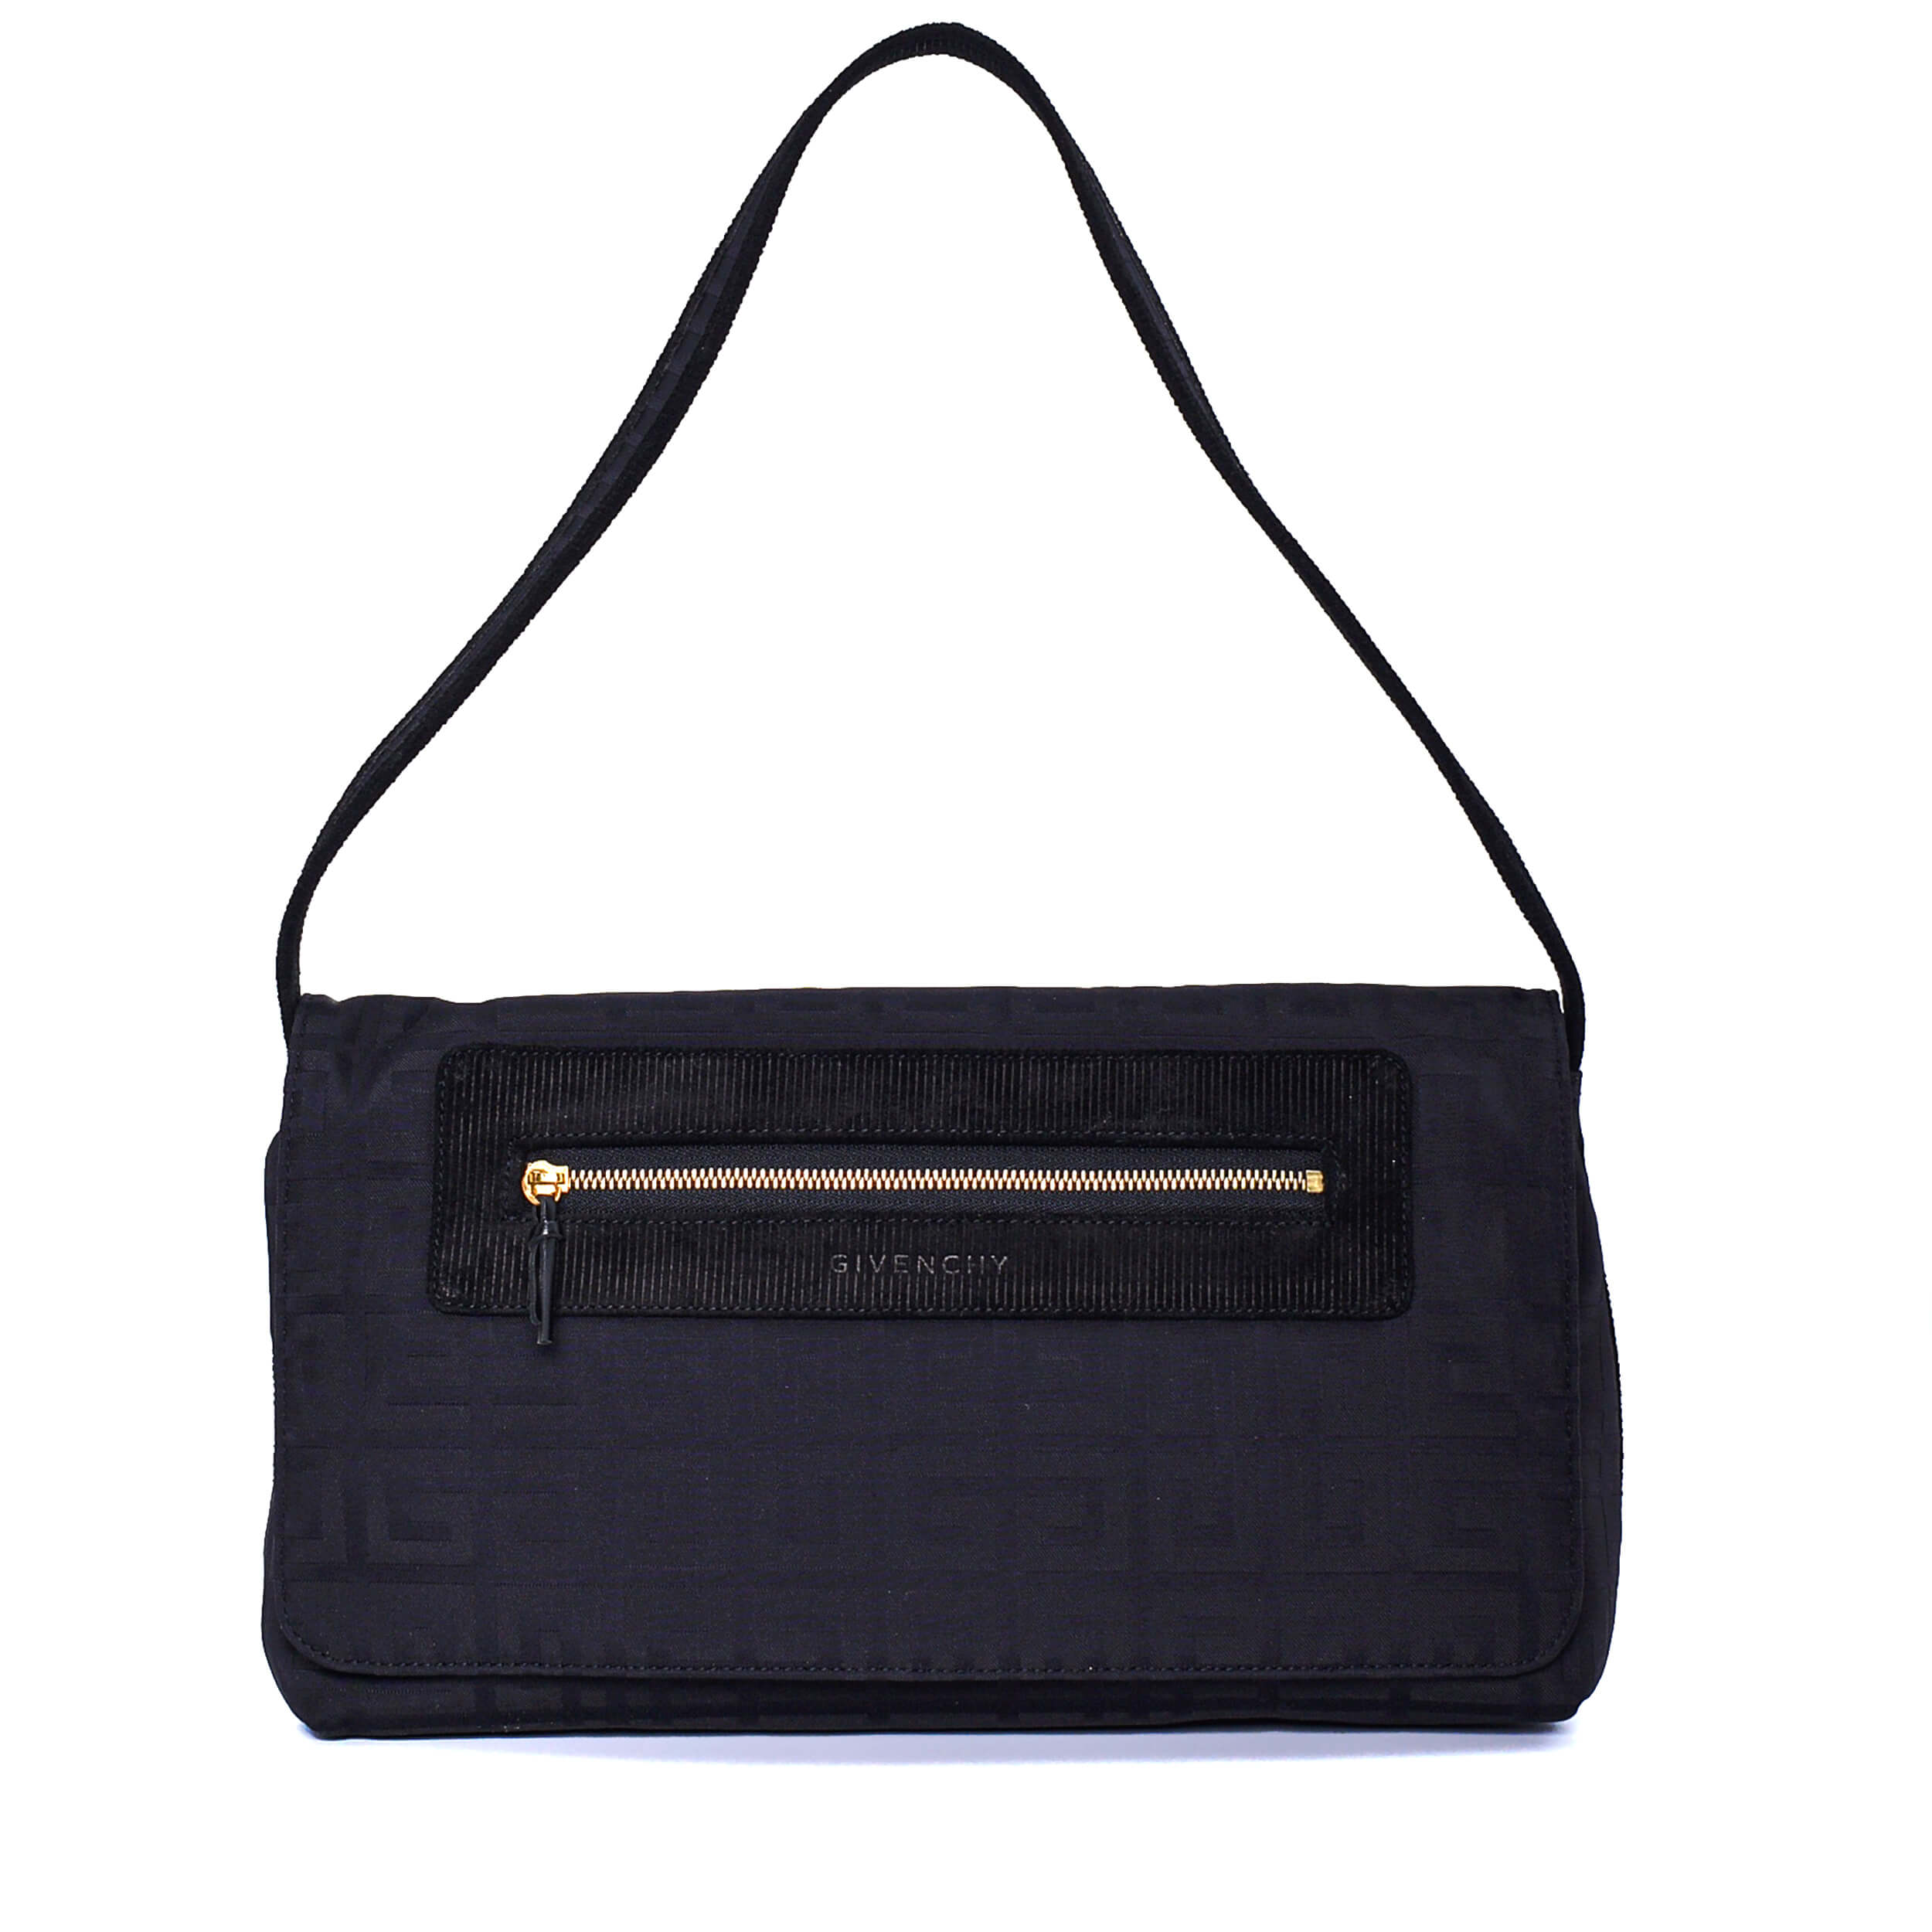 Givenchy - Black Fabric Vintage Baguette Bag